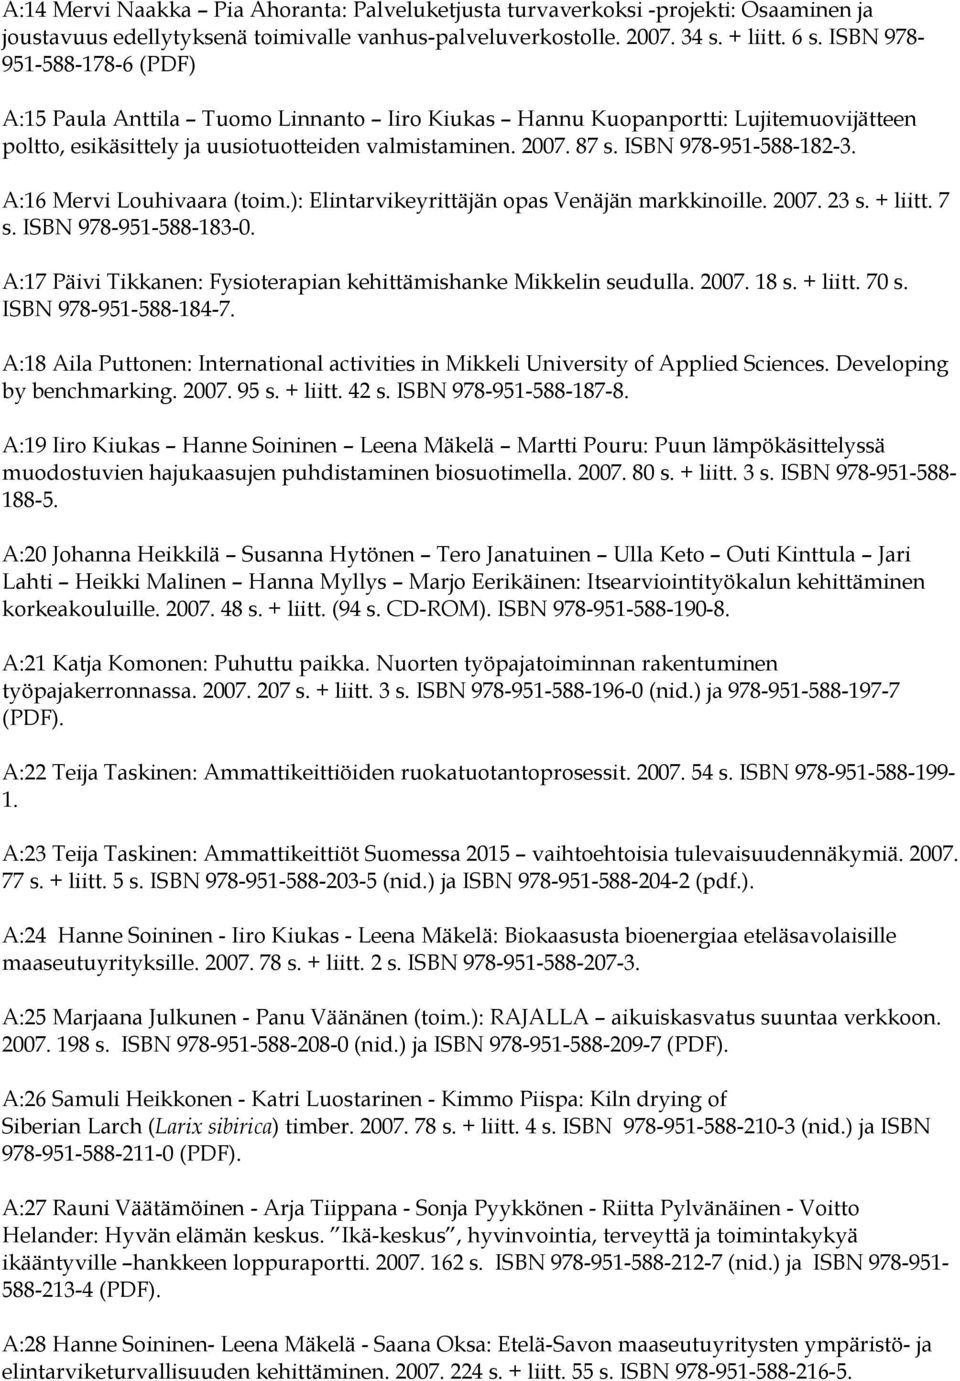 ISBN 978-951-588-182-3. A:16 Mervi Louhivaara (toim.): Elintarvikeyrittäjän opas Venäjän markkinoille. 2007. 23 s. + liitt. 7 s. ISBN 978-951-588-183-0.